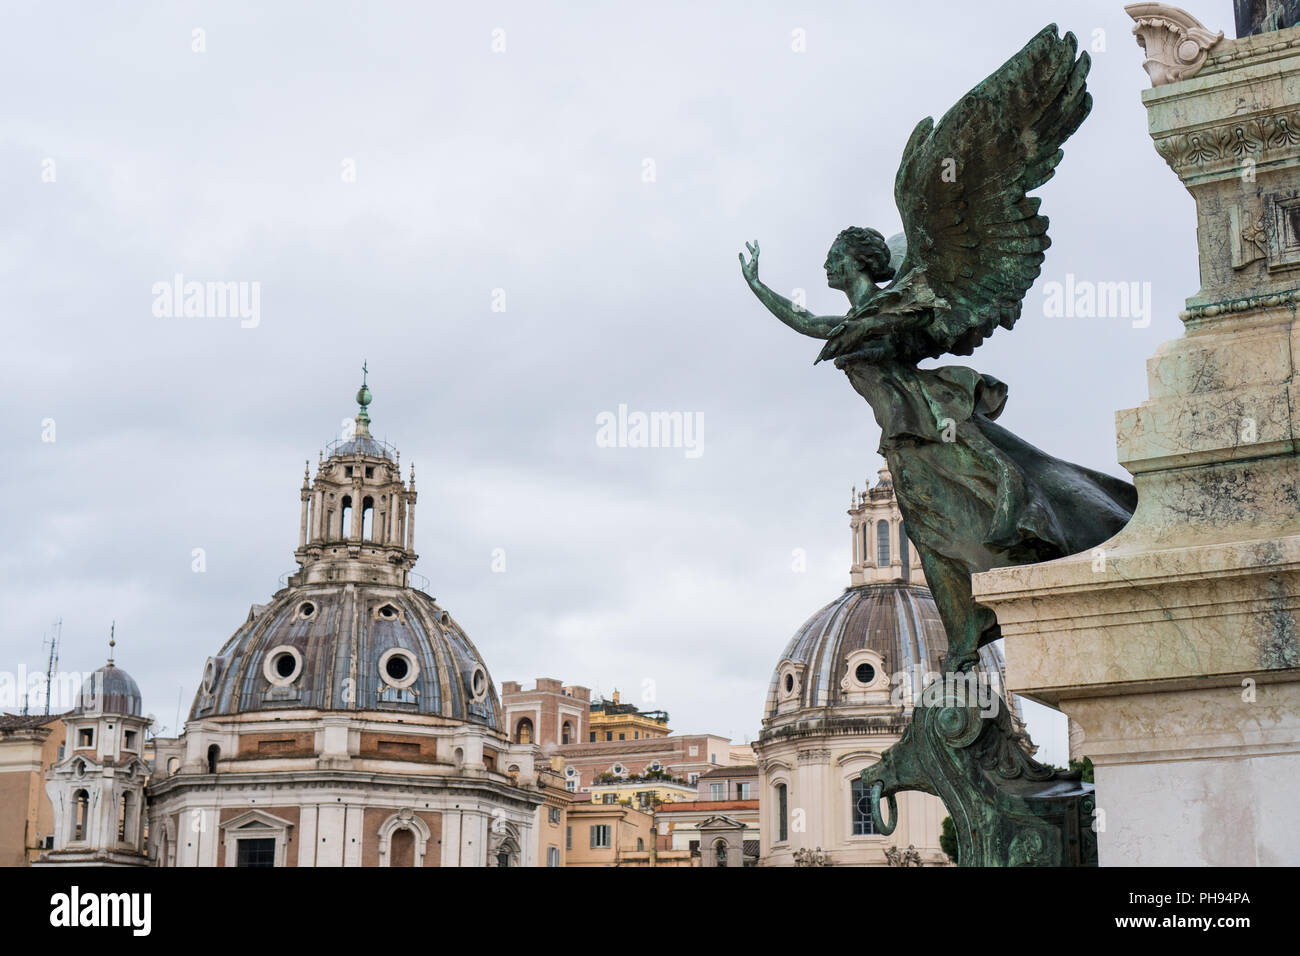 Colonne avec statue d'un ange sur monument Vittoriano à Rome, Italie Banque D'Images